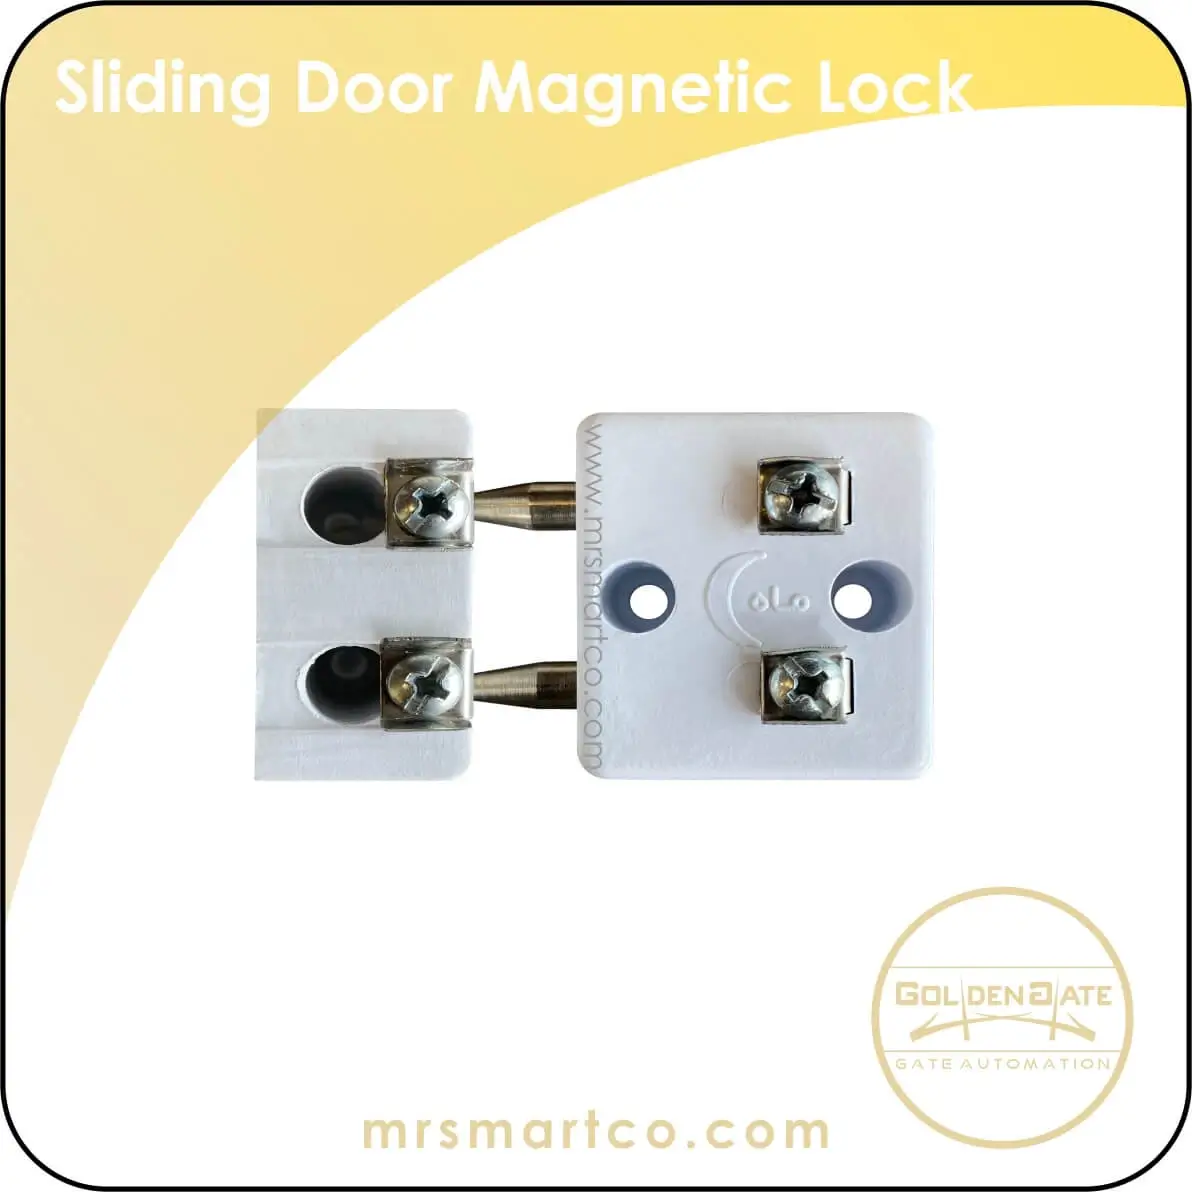 Sliding Door Magnetic Lock